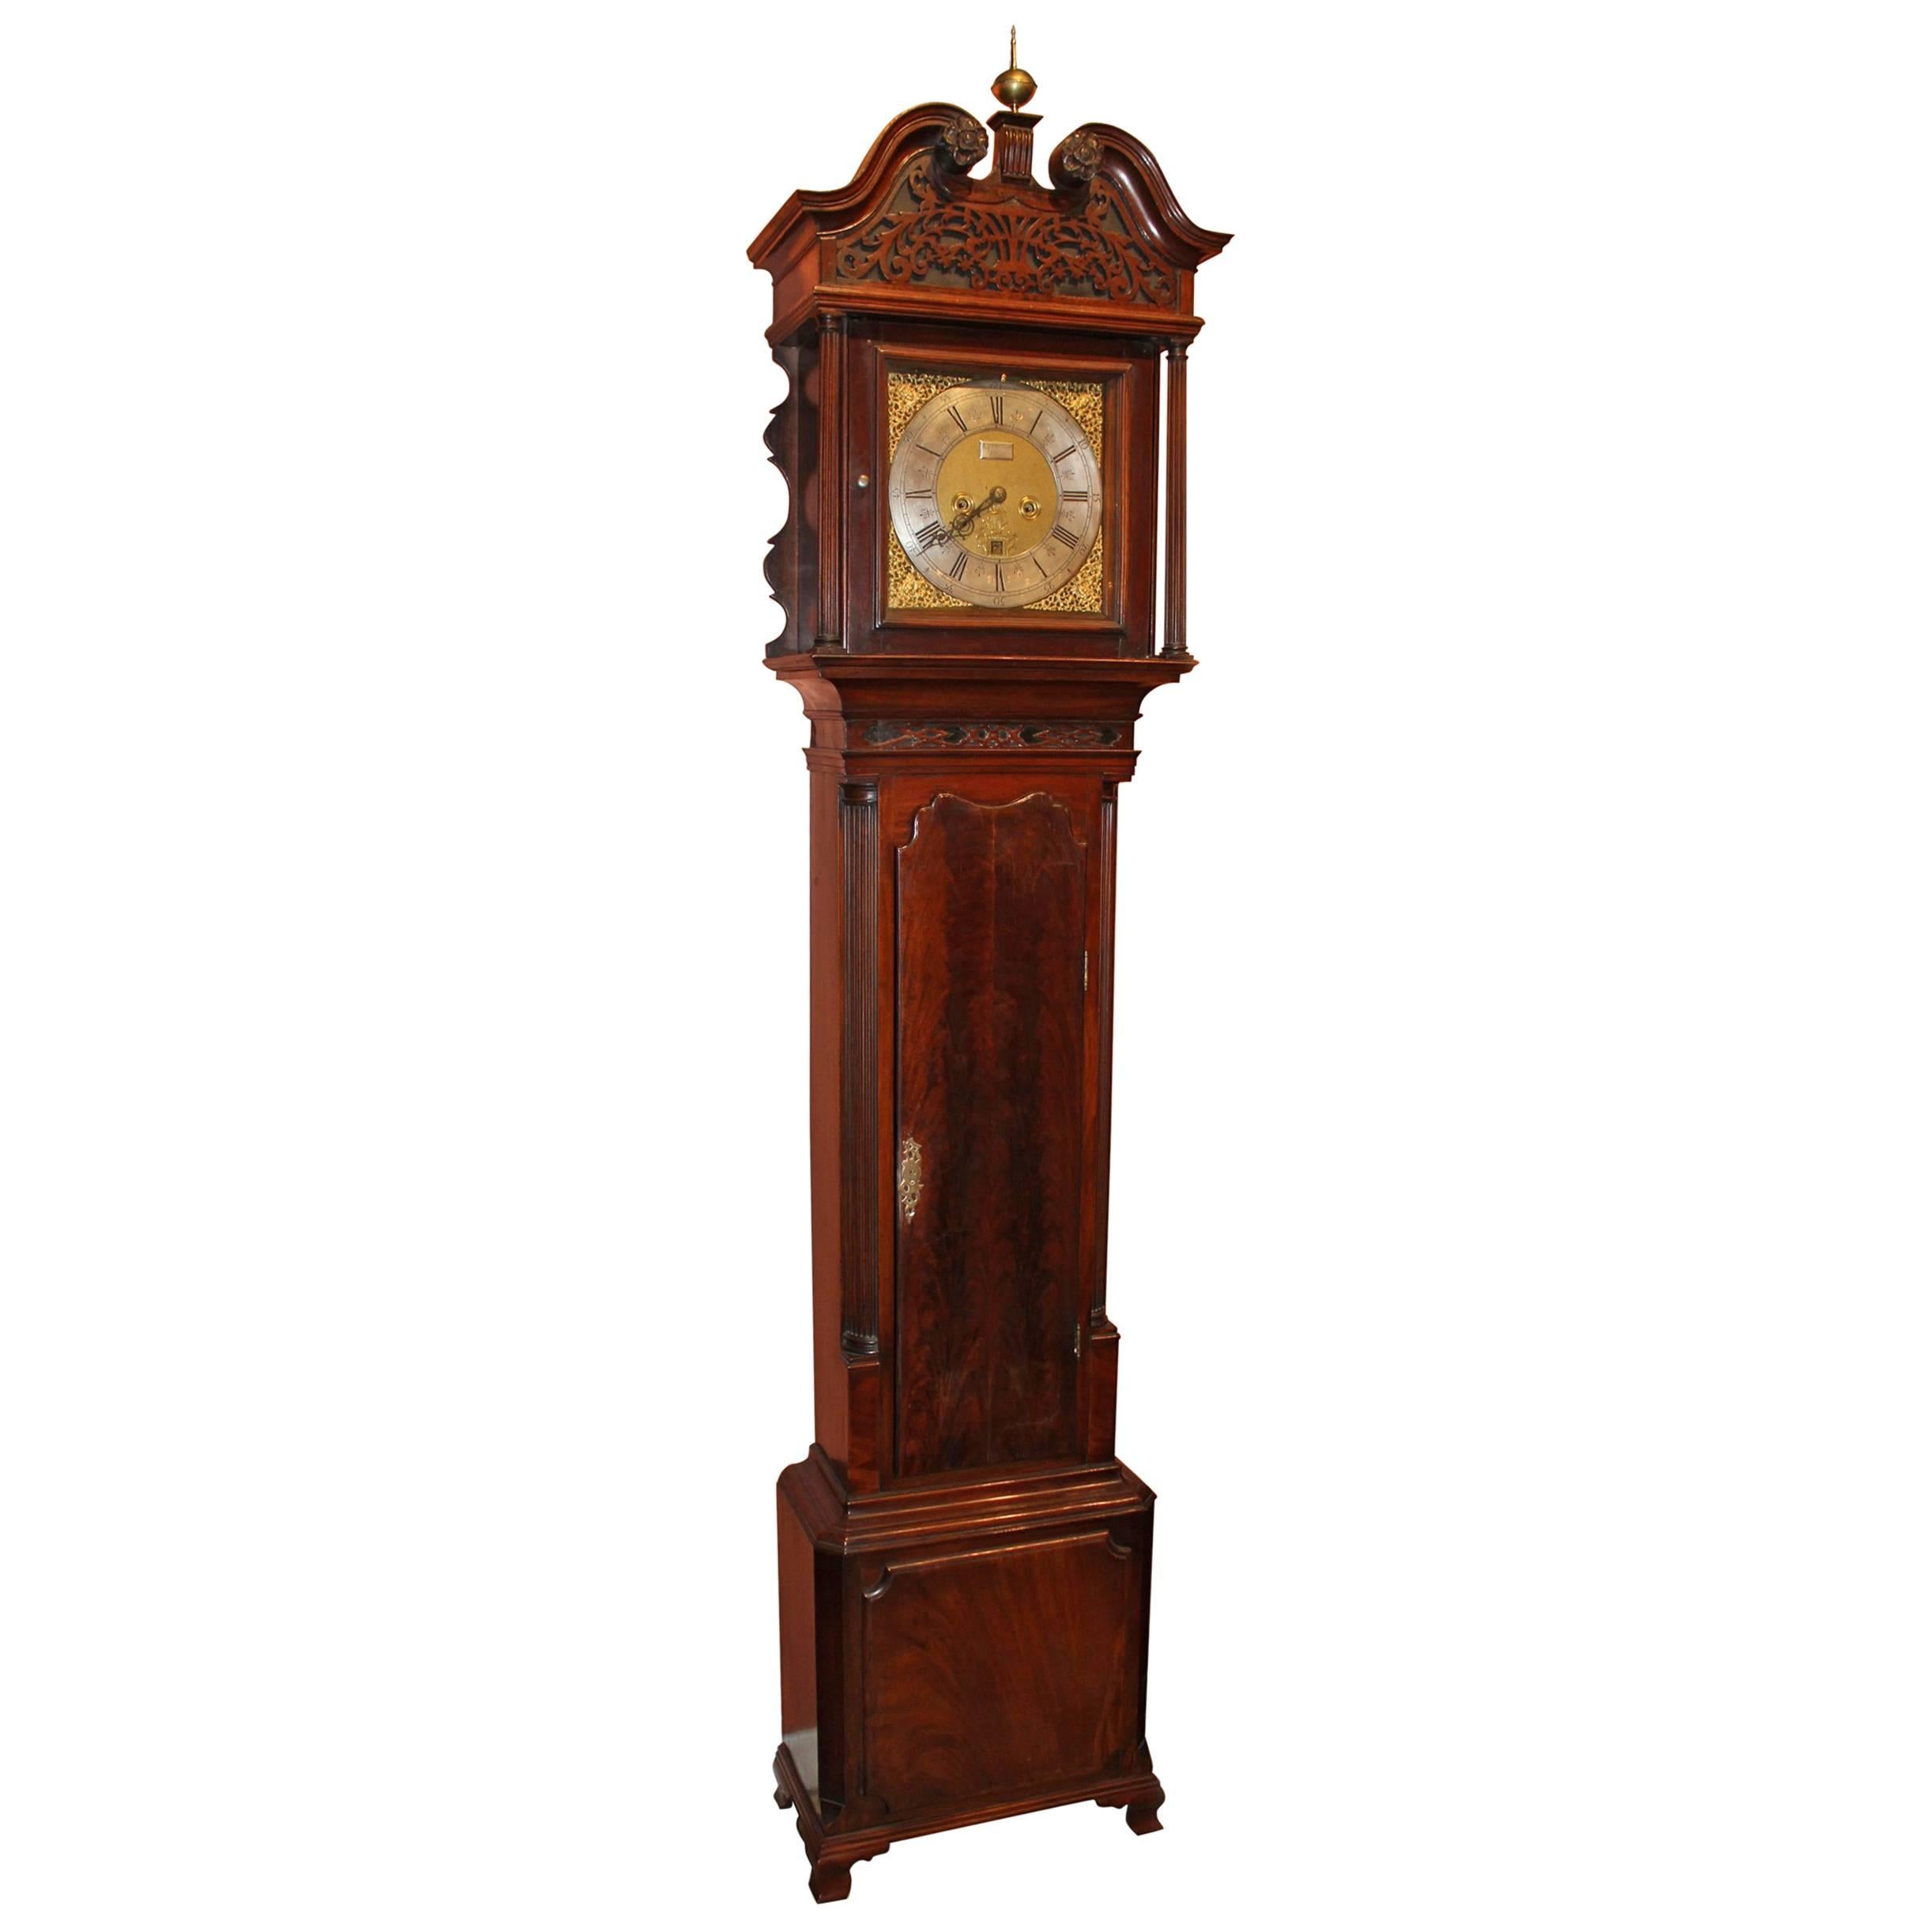 18th Century Georgian Mahogany Tall Case Clock, Signed Ralph Sherratt Tilley